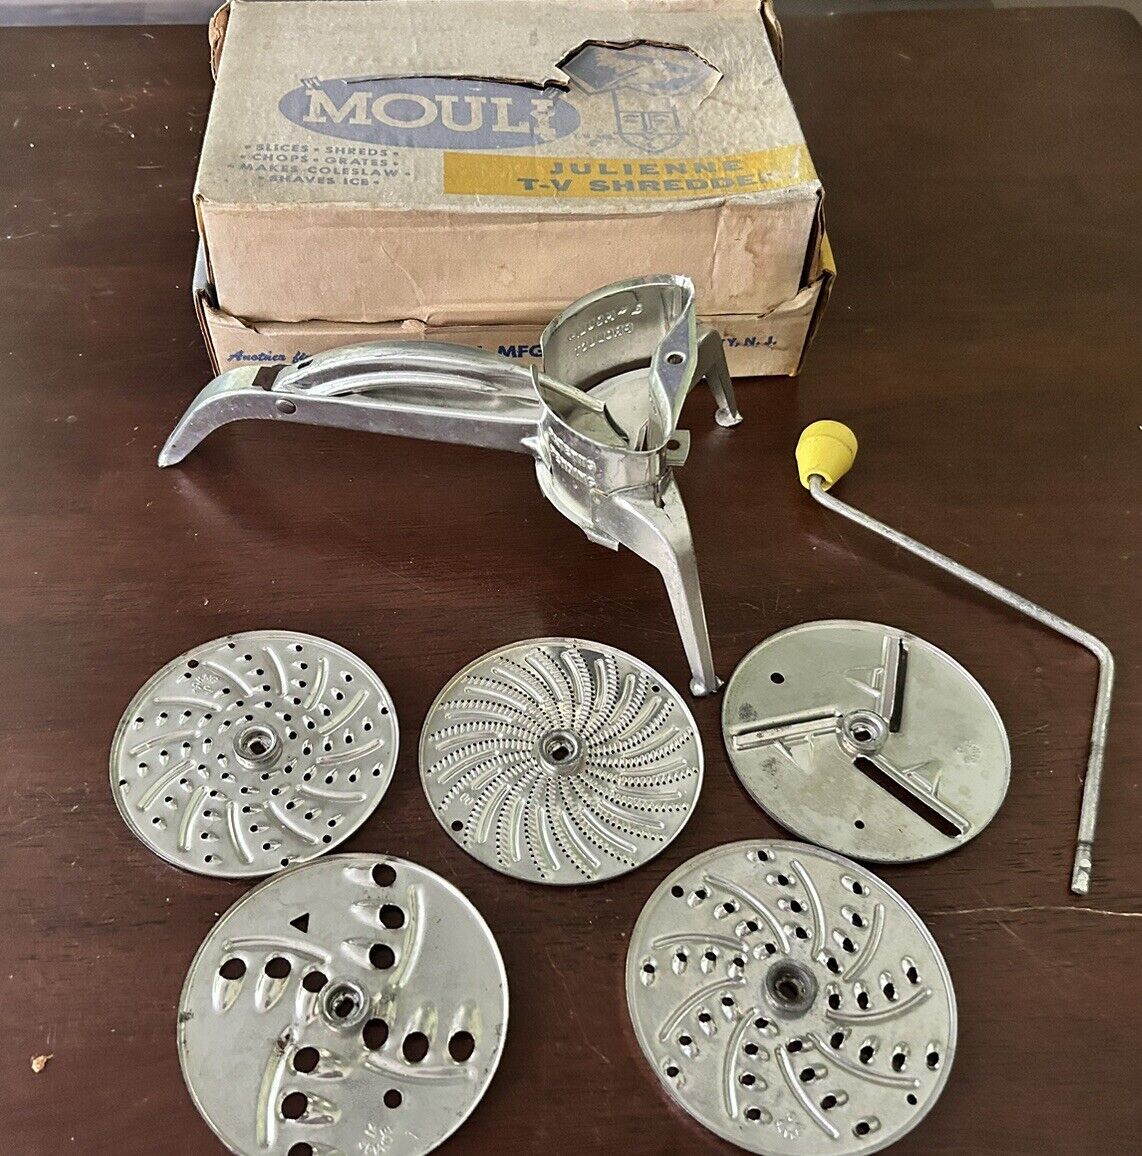 Vintage MOULI Julienne Rotary T-V SHREDDER complete 5 Blades / ORIGINAL BOX